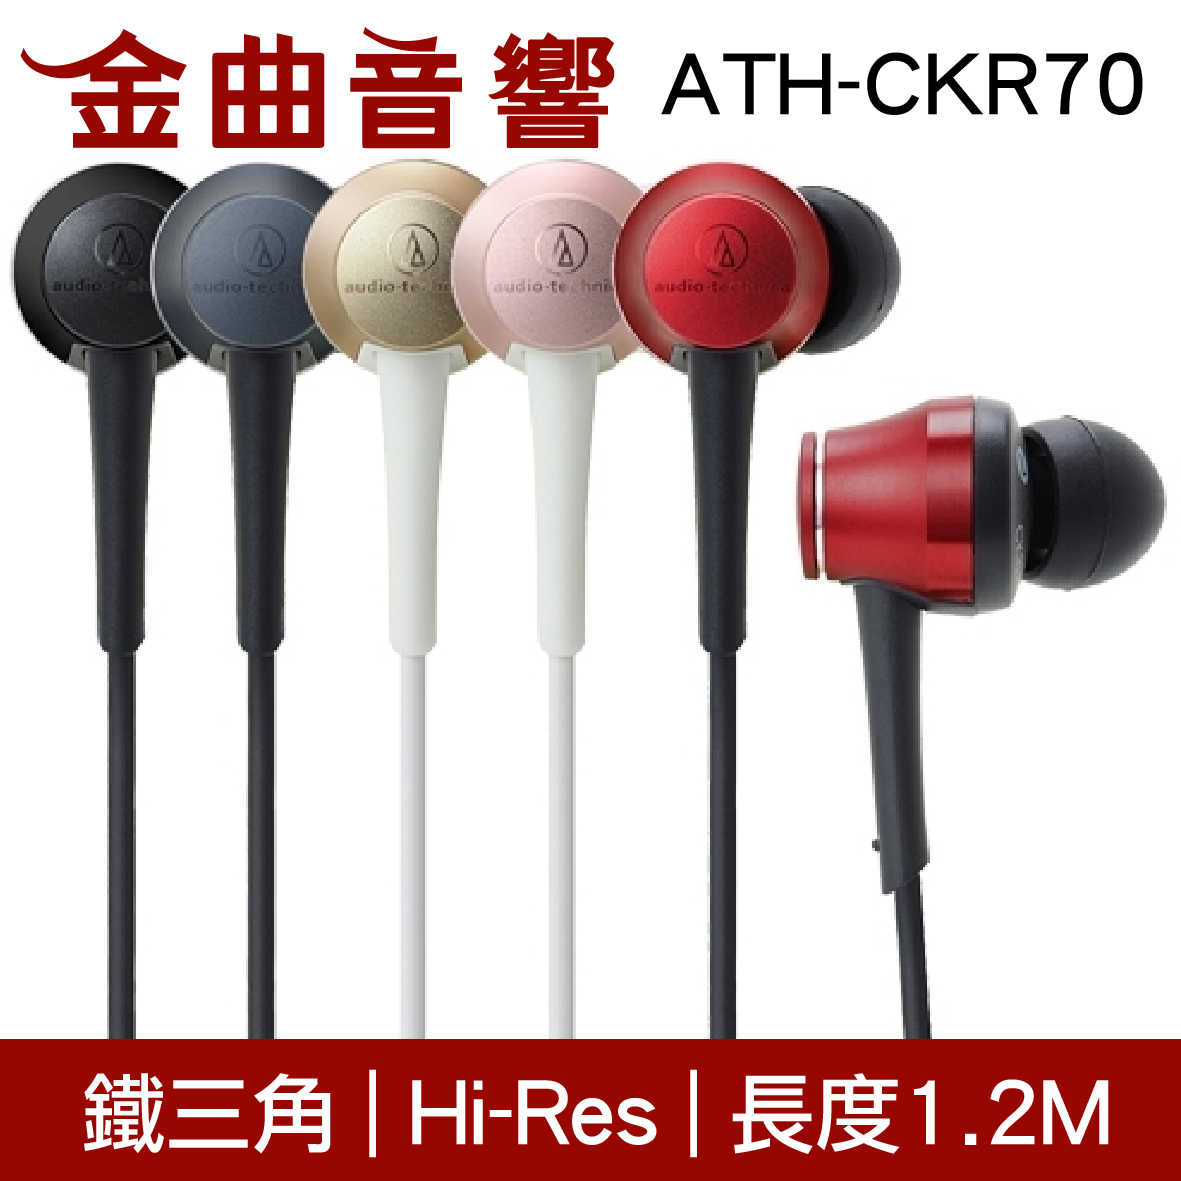 鐵三角 ATH-CKR70 翡翠藍 耳道式耳機 | 金曲音響